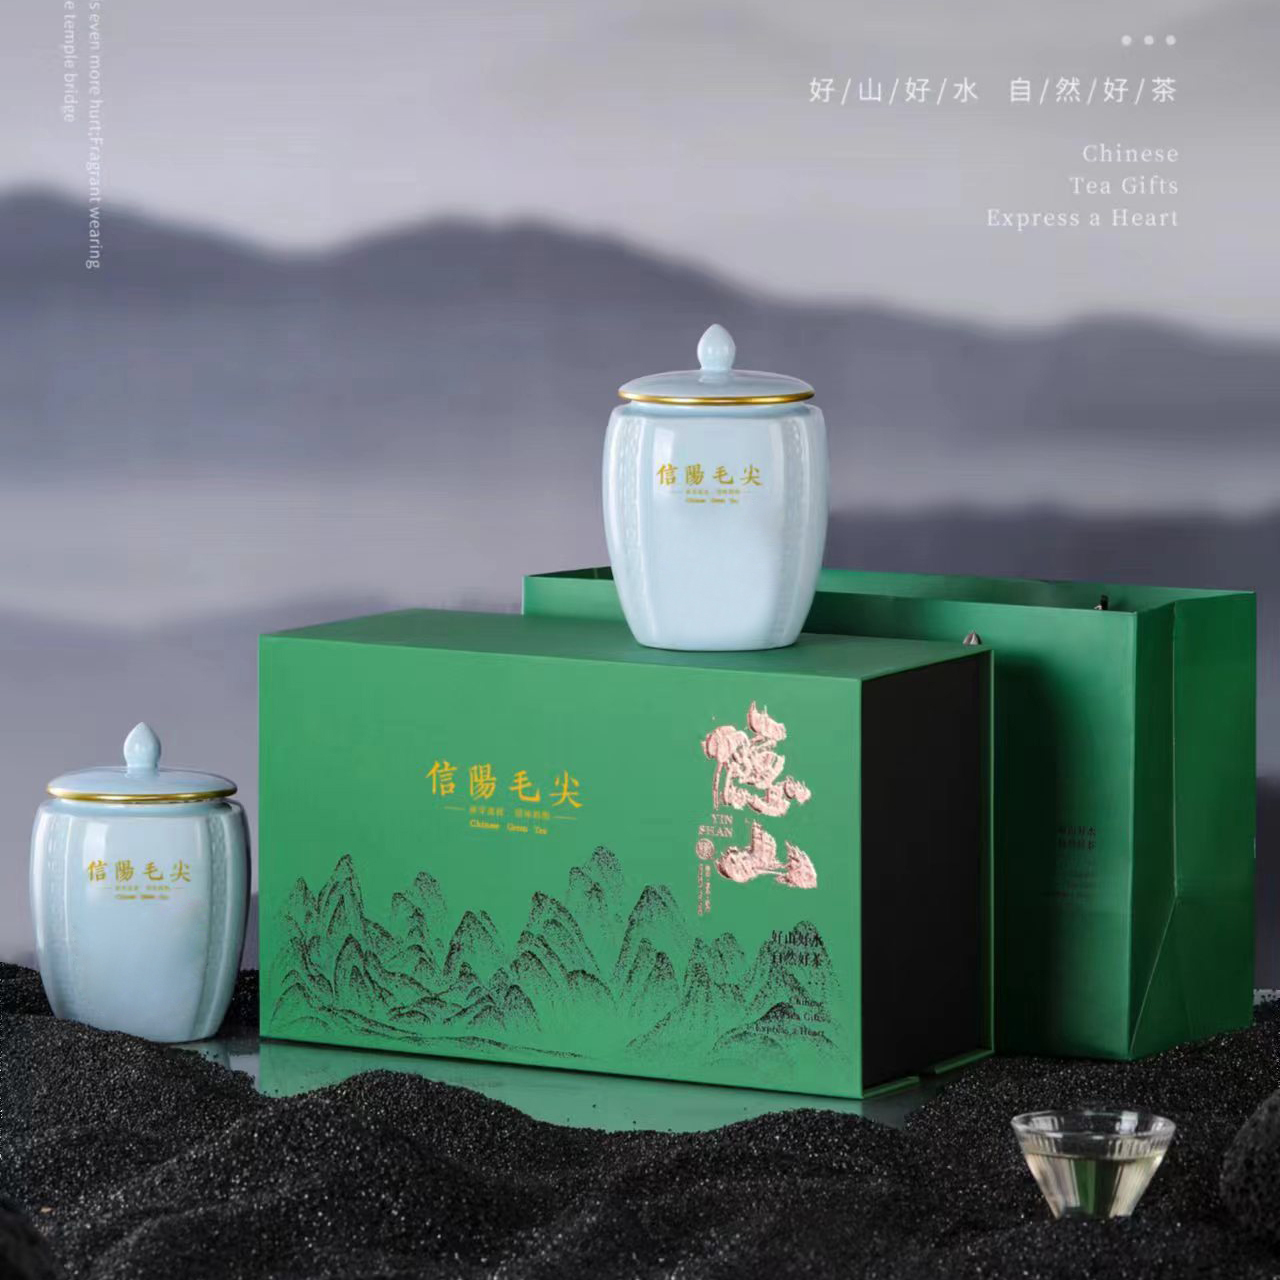 信阳毛尖绿茶茶叶礼盒空盒龙井双陶瓷密封罐礼品盒毛峰茶包装盒